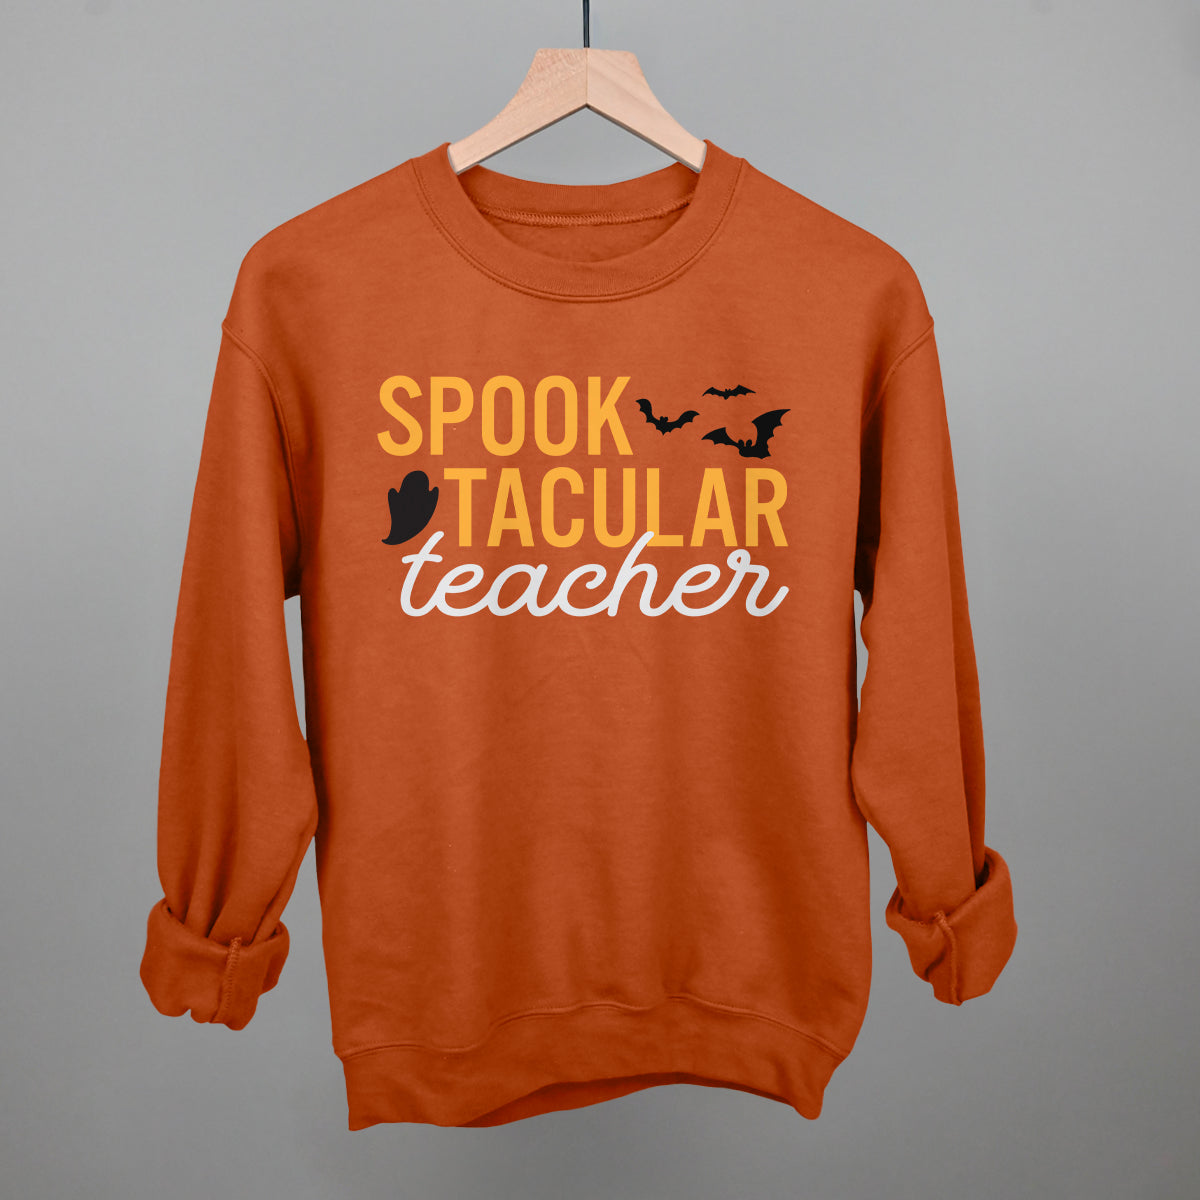 Spook-tacular Teacher